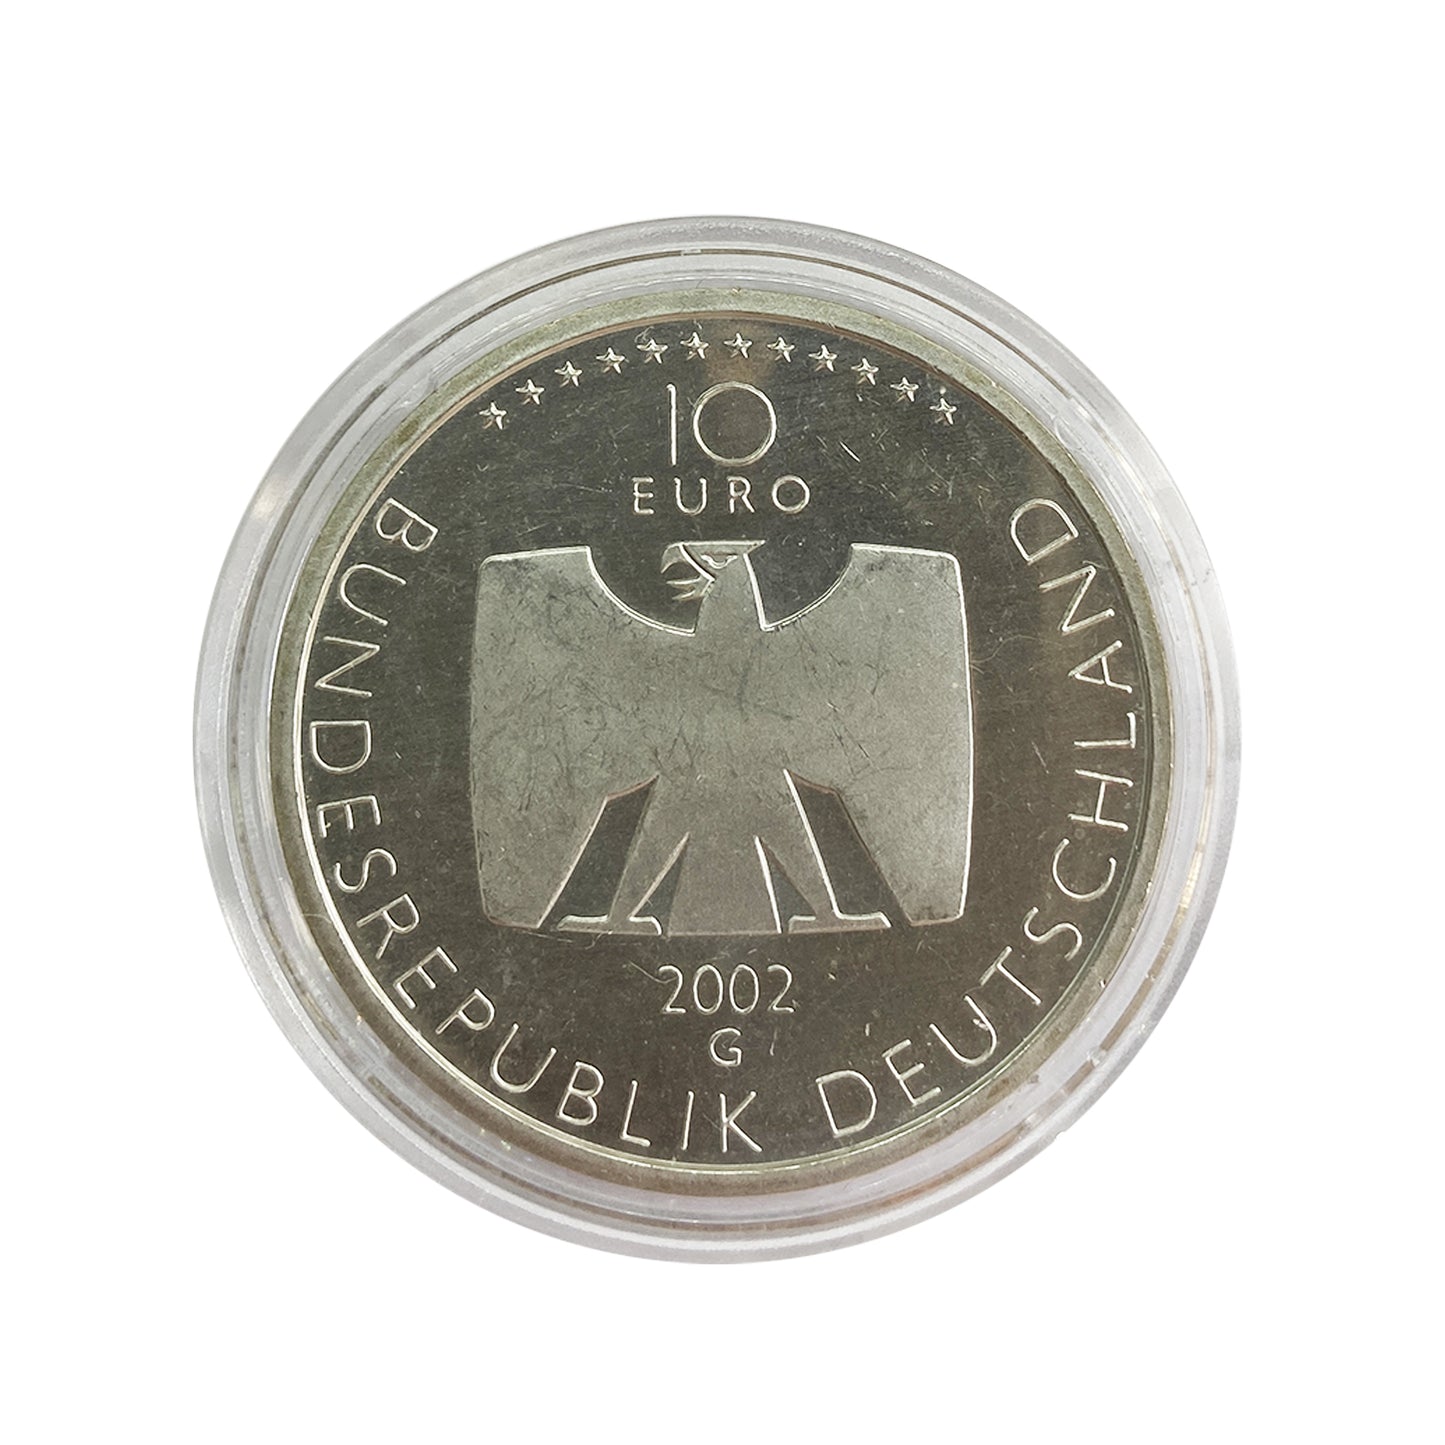 Alemania - Moneda 10 euros plata 2002 - 50 Años de la televisión alemana